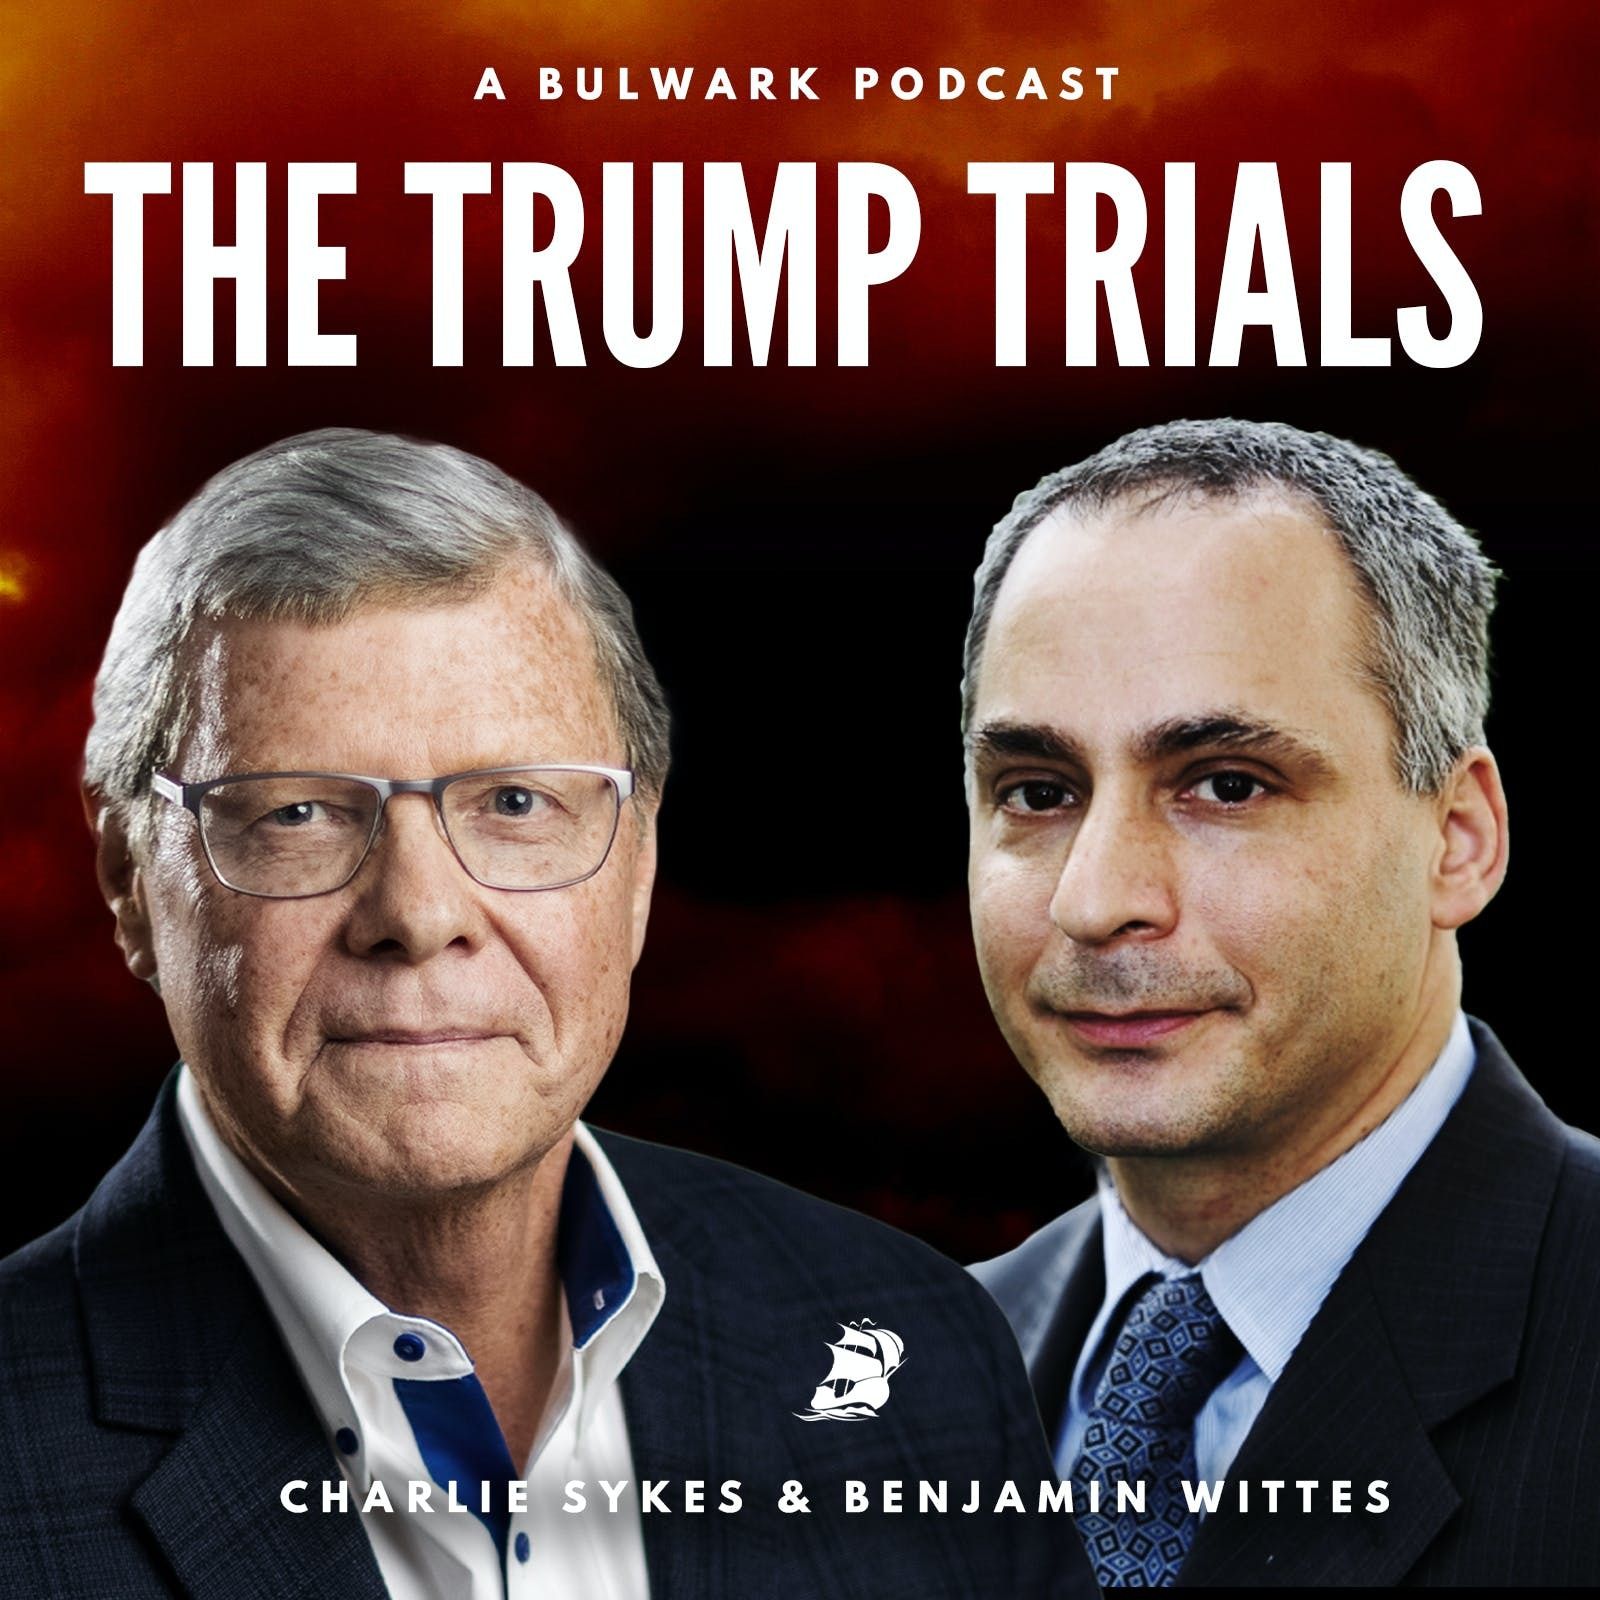 The Trump Trials